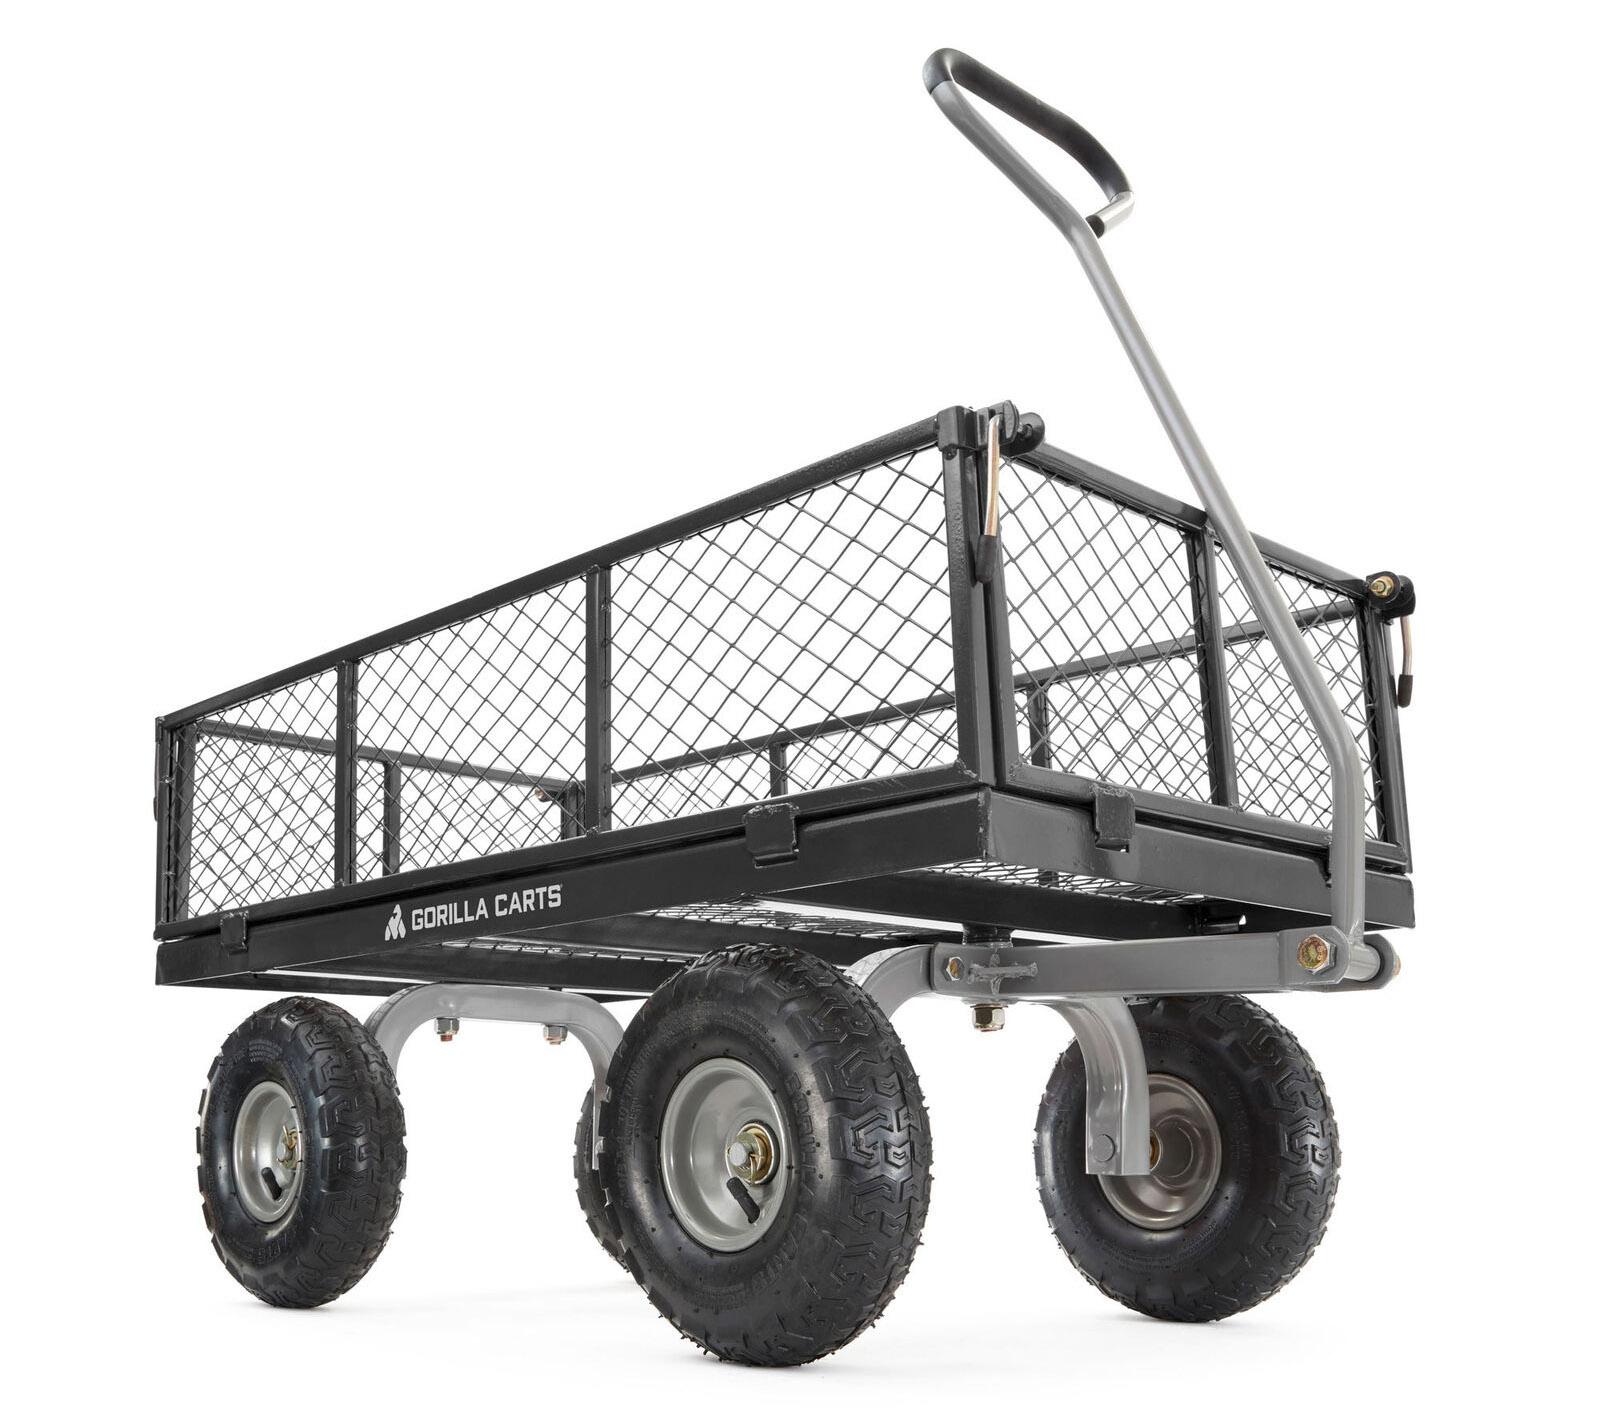 Gorilla Carts Steel Utility Cart Garden Beach Wagon for $104.99 Shipped